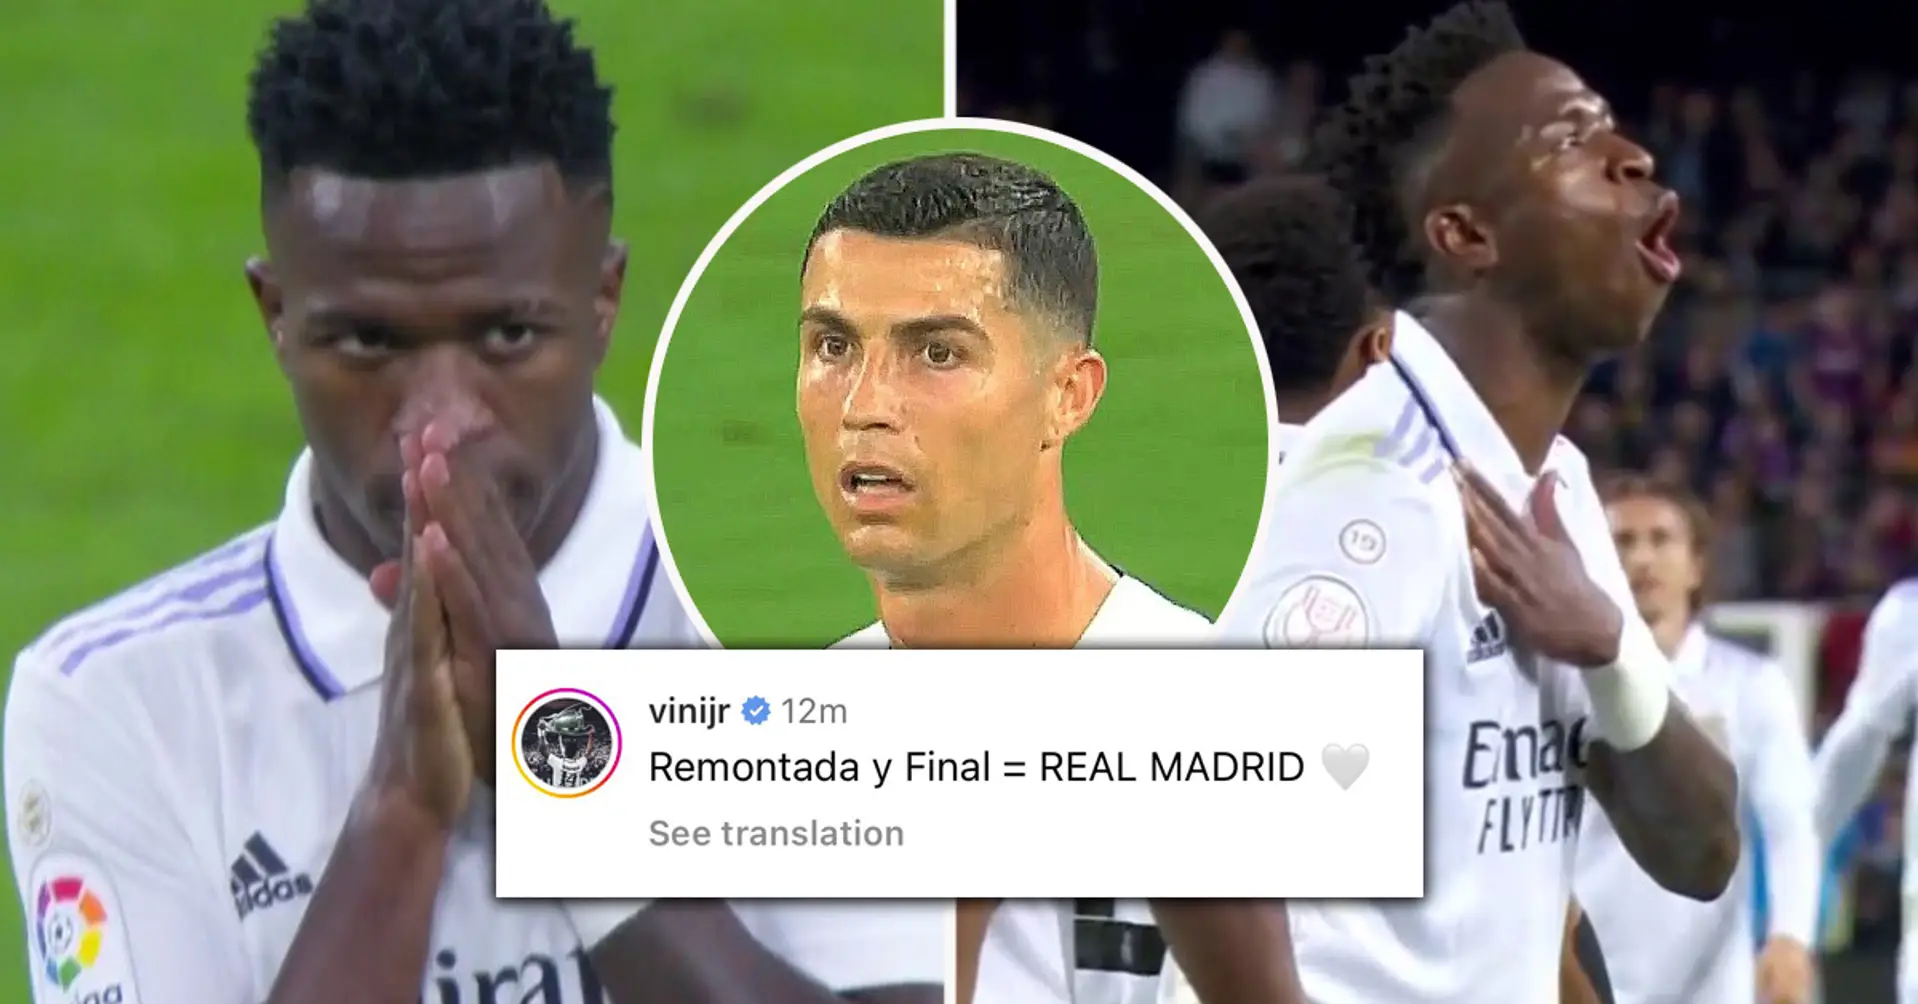 Ronaldos Einfluss? Nach dem spektakulären Clasico-Sieg von Real Madrid reagierte der Spieler von Man United, Alejandro Garnacho, plötzlich auf den Post von Vinicius 